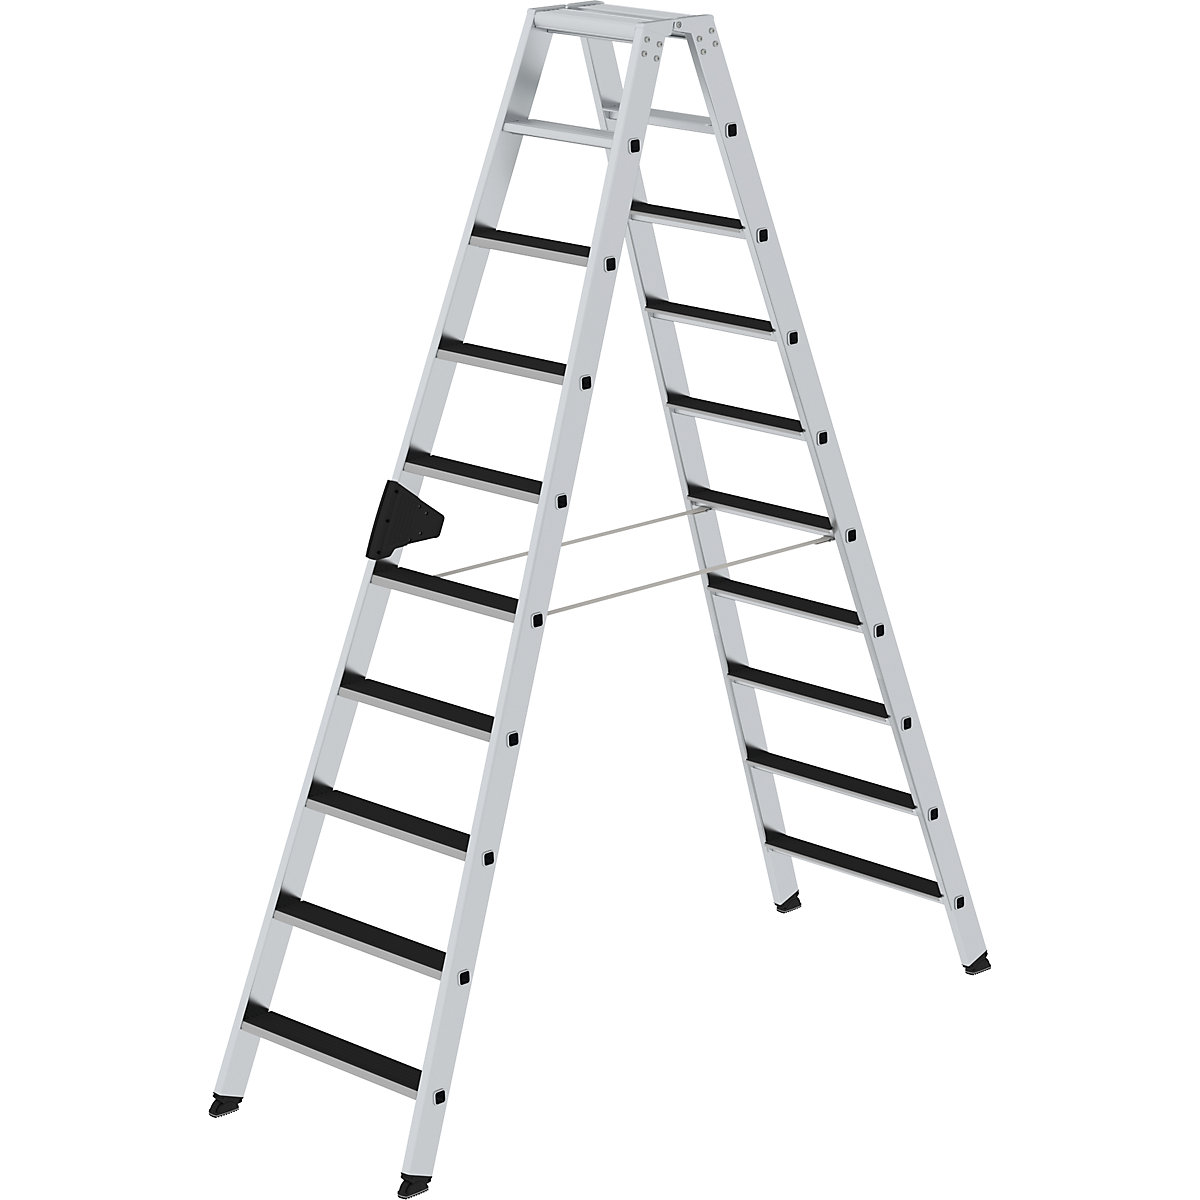 Dvokraka lestev s stopnicami CLIP-STEP – MUNK, obojestransko vzpenjanje, narebrene, št. stopnic 2 x 10